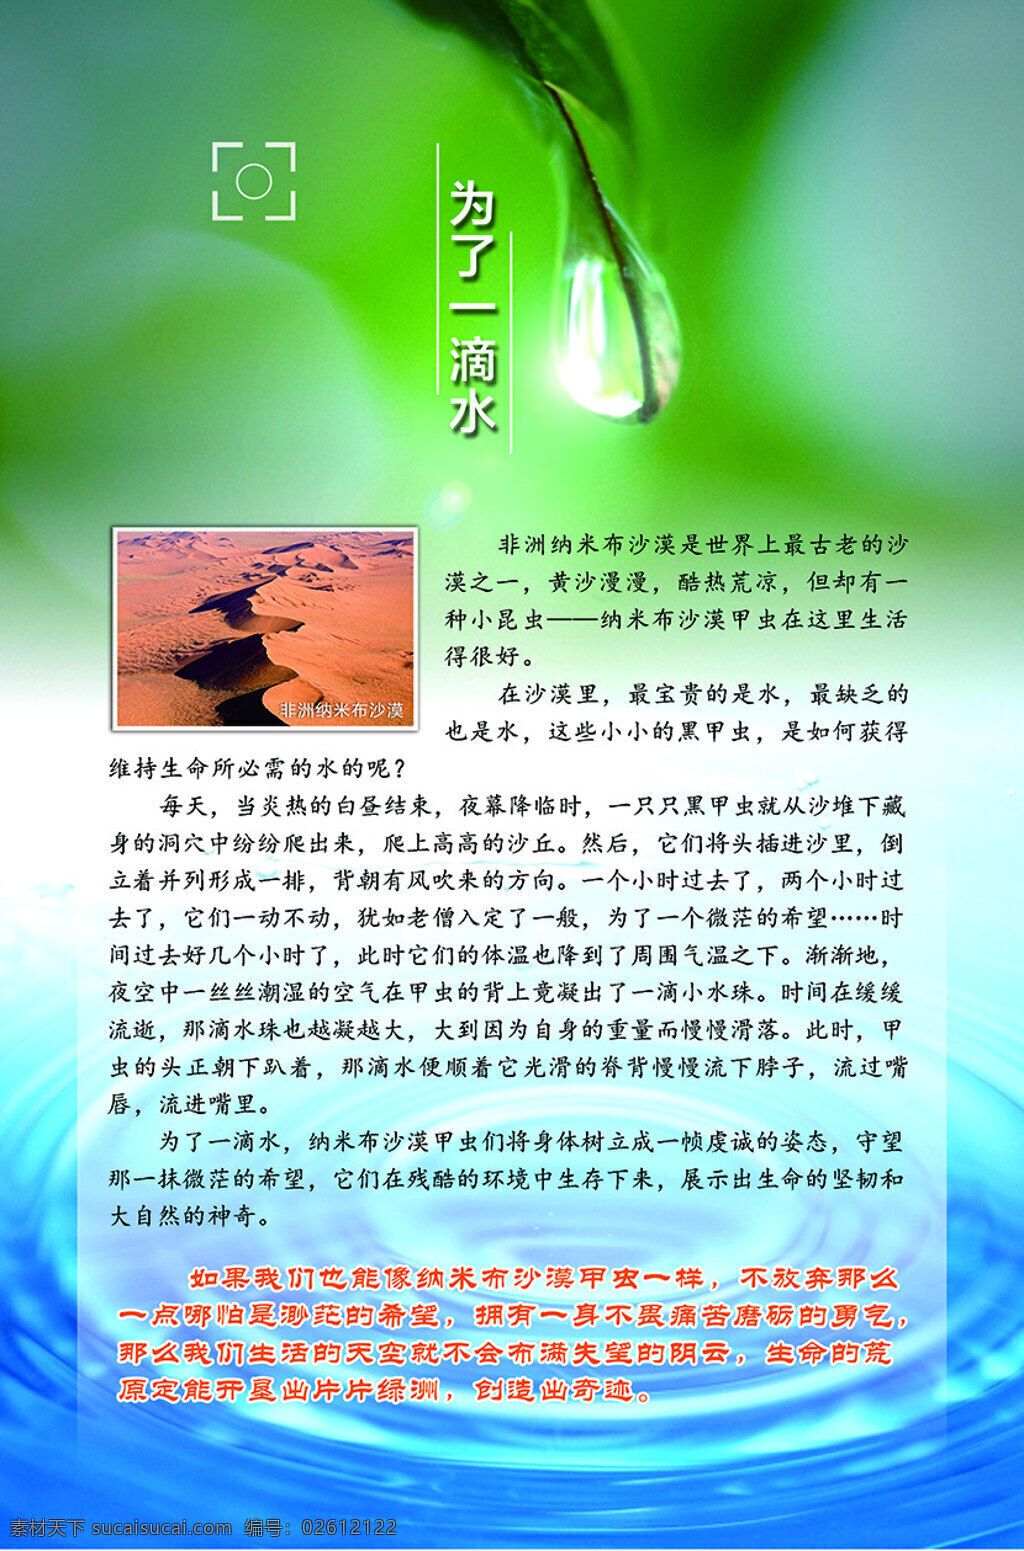 为了一滴水 节约用水展板 水展板 水文化宣传 海报 水 绿色水背景 展 水背景 山水连泉 刘泽龙设计